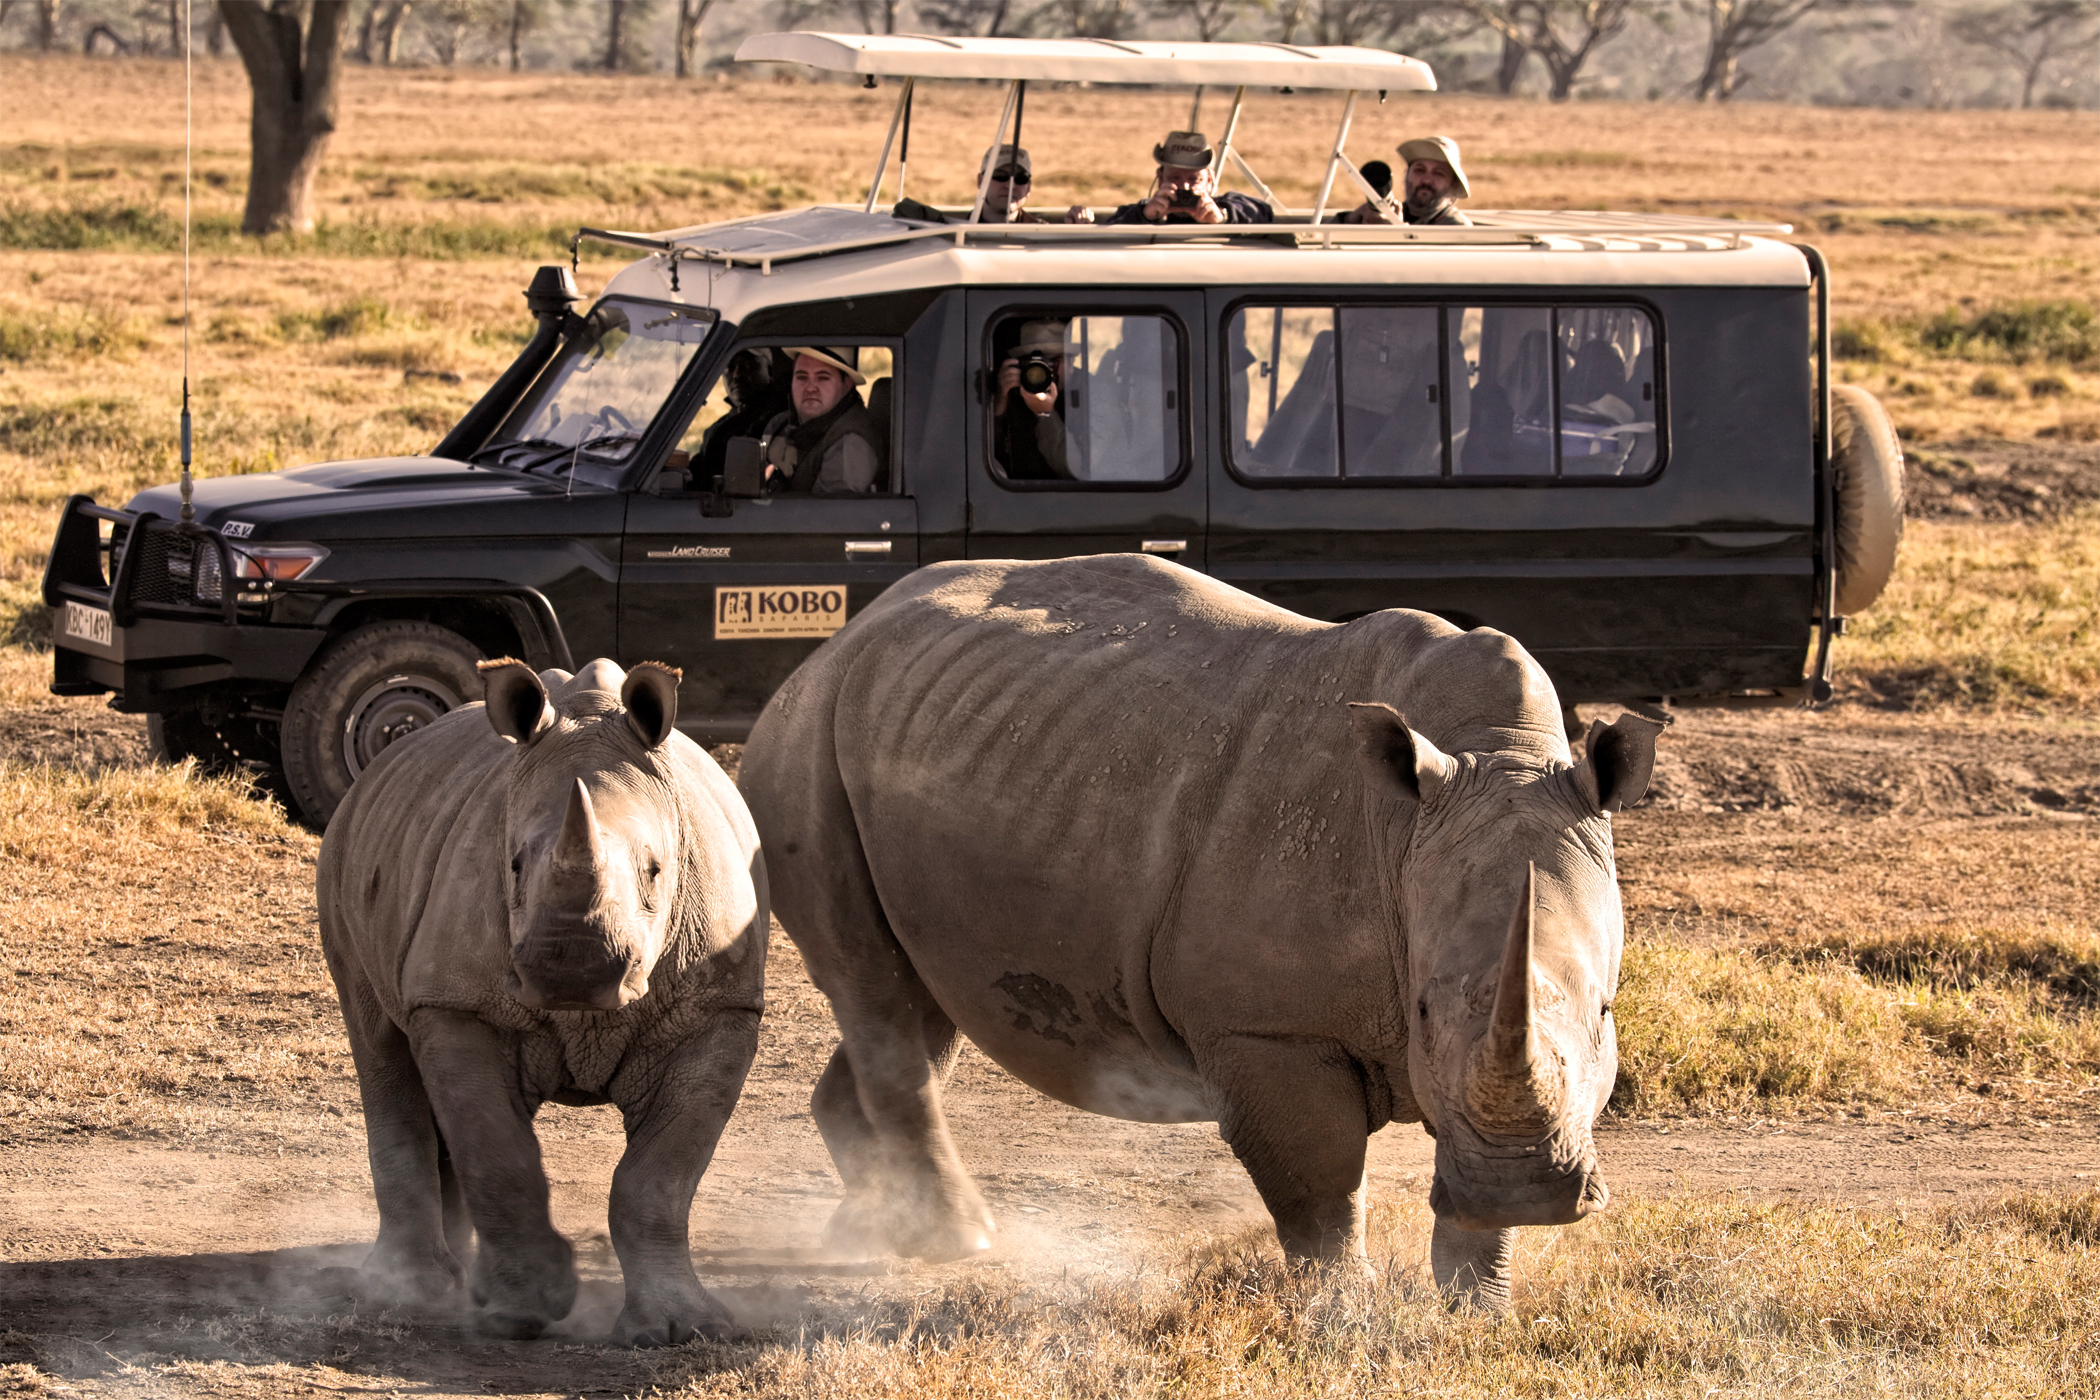 Rhinos in Nakuru National Park in Kenya.